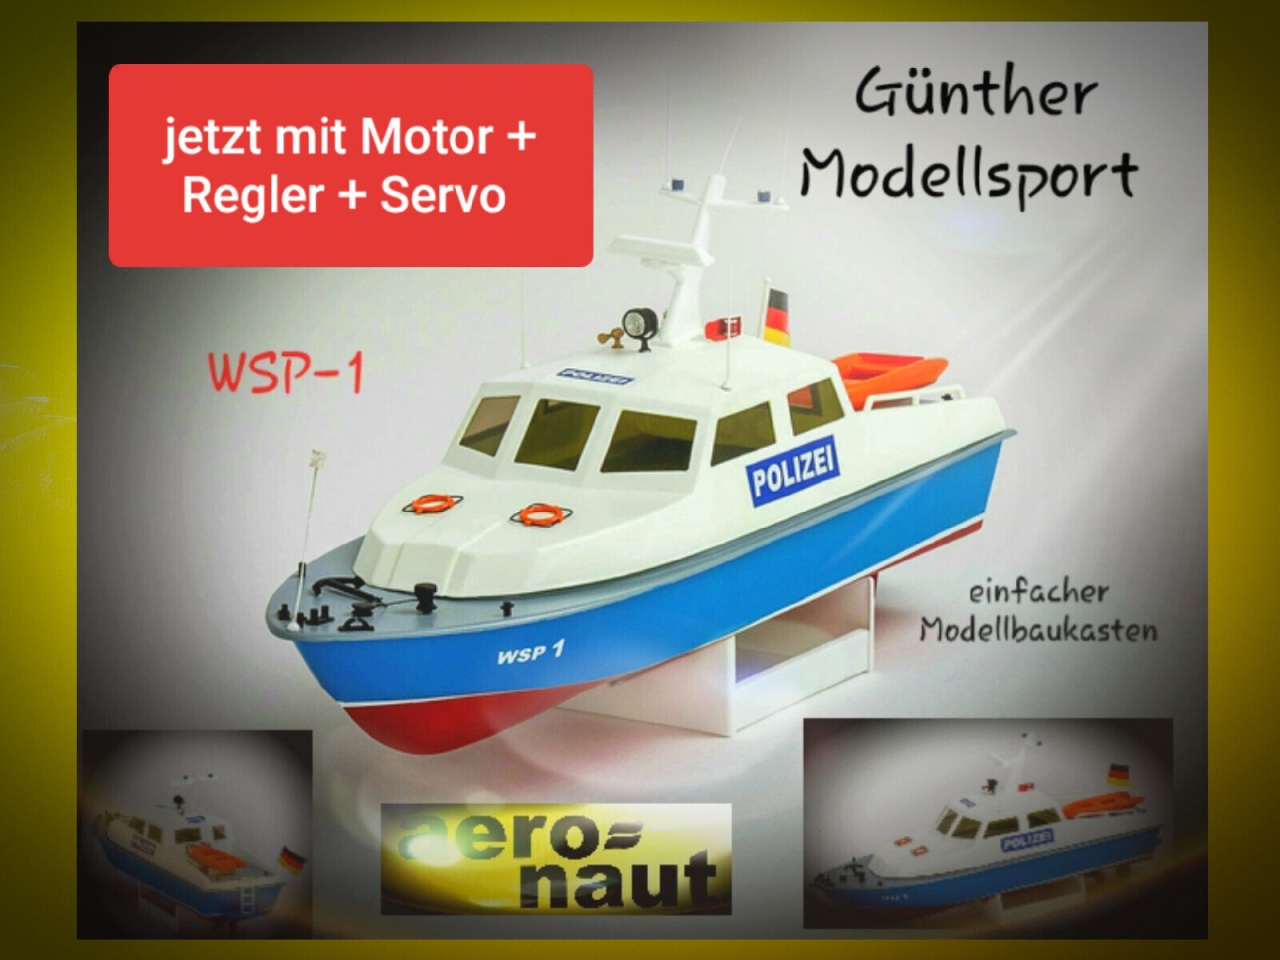 aeronaut Polizeiboot WSP-1, Behördenschiff 3059/00 mit Motor